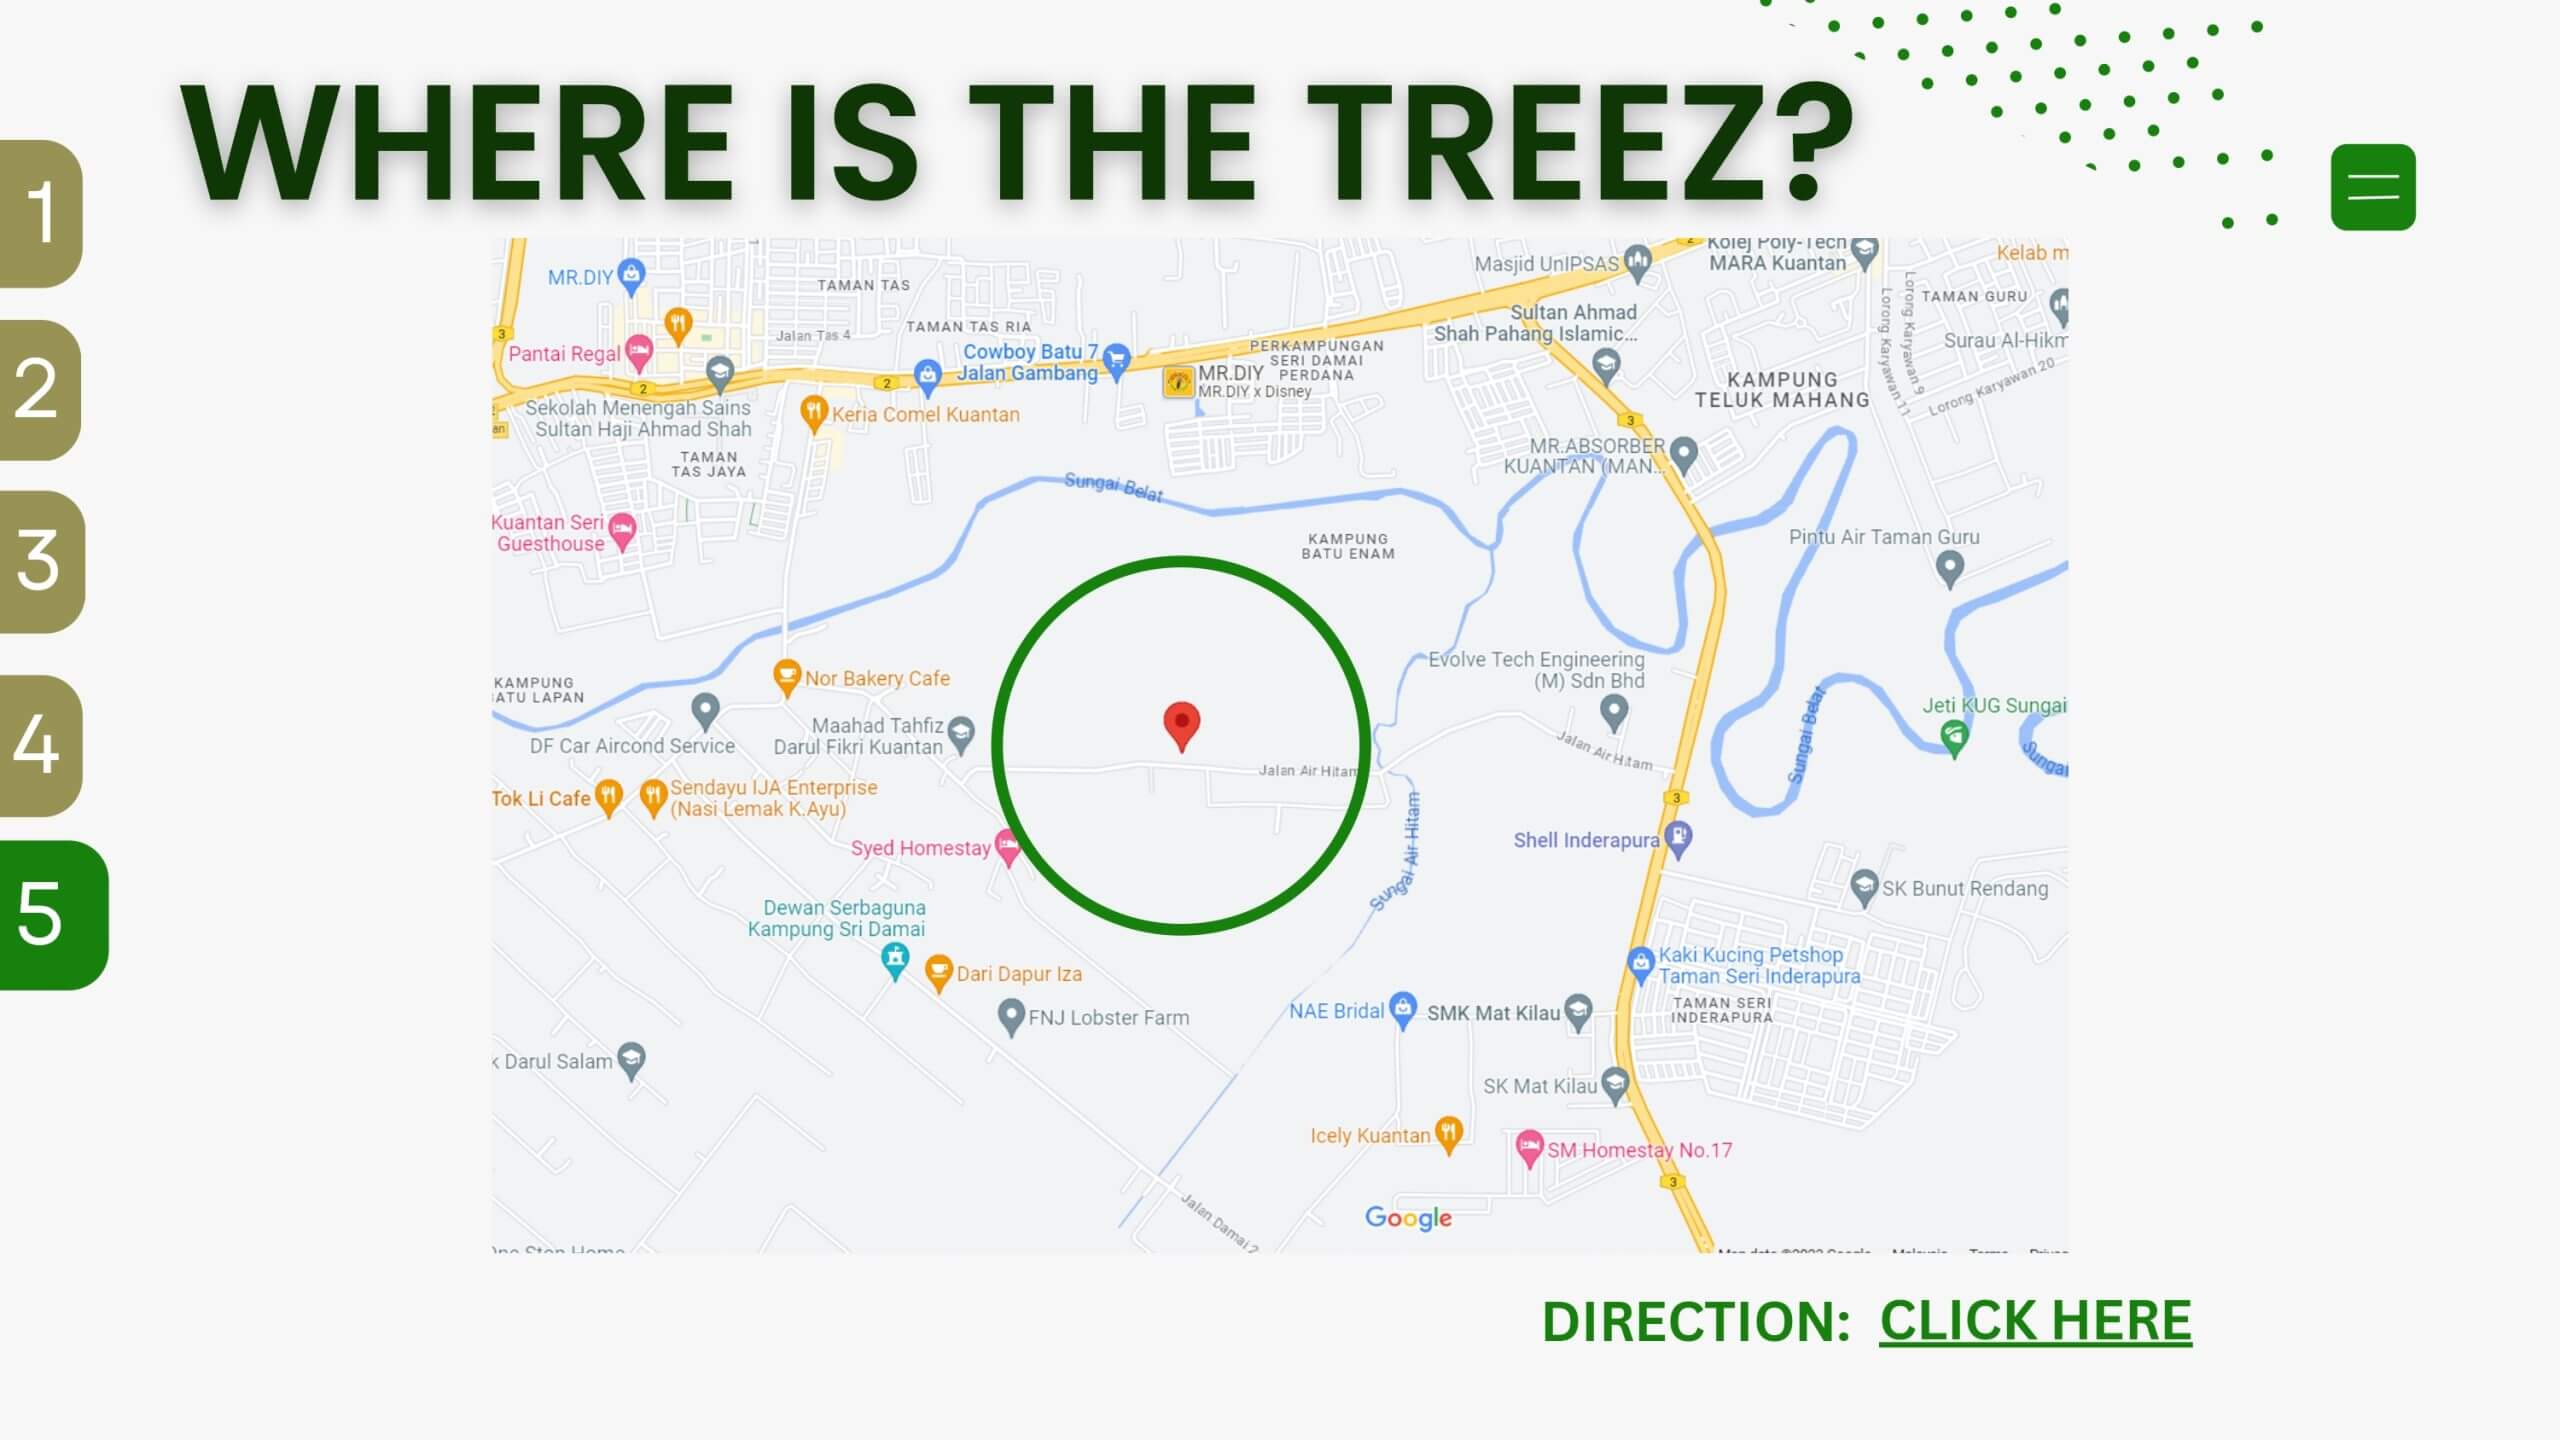 The Treez